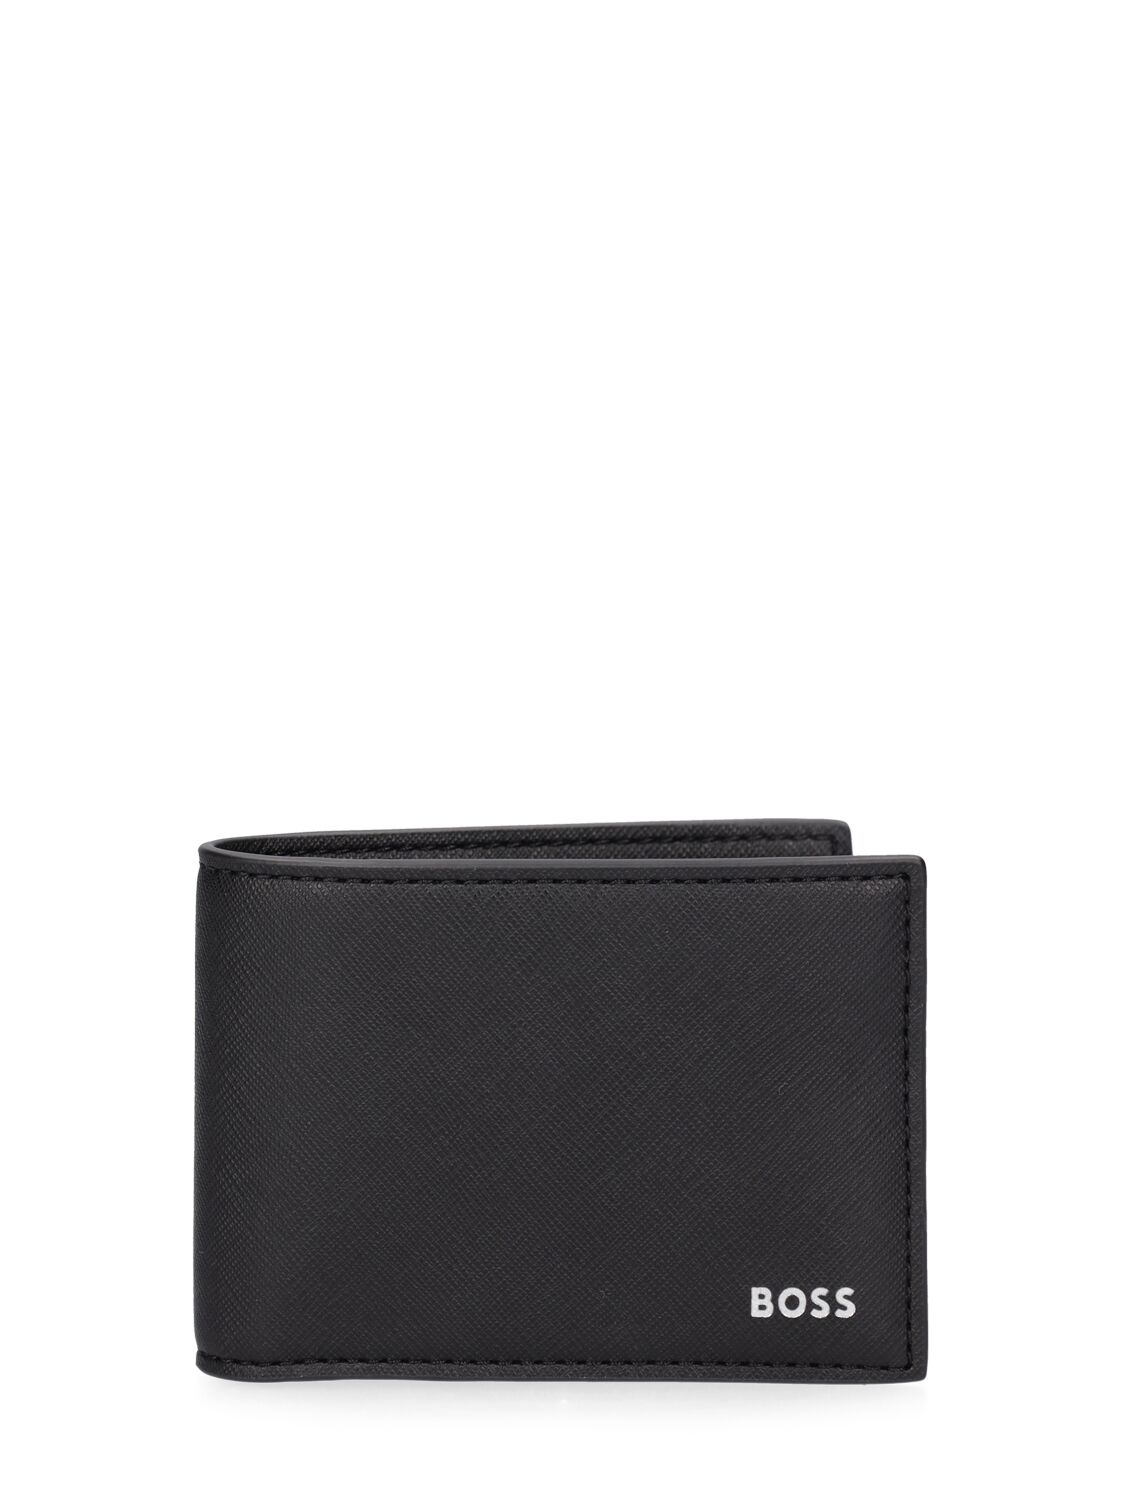 Zain Leather Billfold Wallet